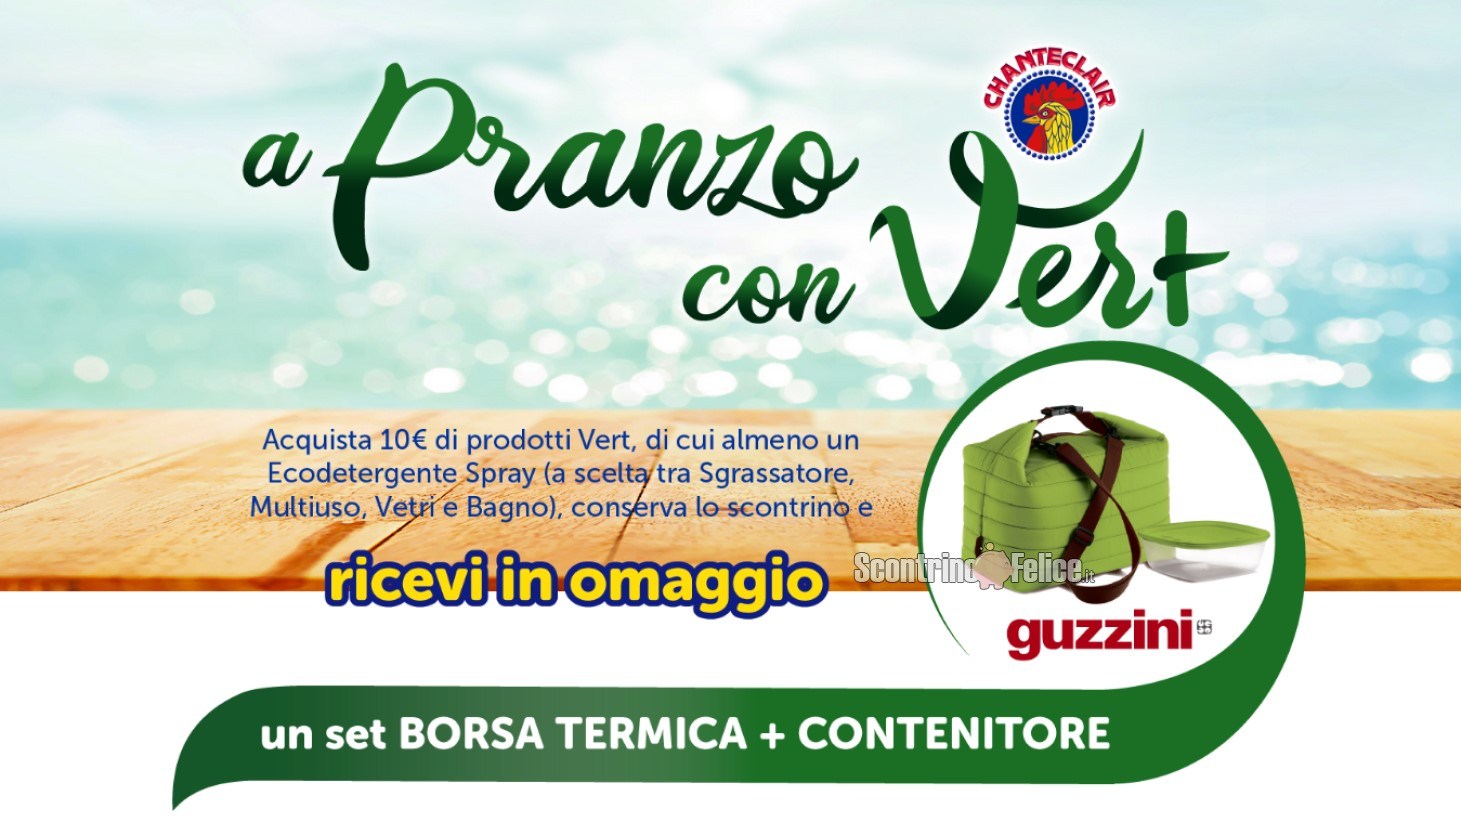 Chanteclair A pranzo con Vert: ricevi il set borsa termica + contenitore  Guzzini come premio certo - Scontrino Felice